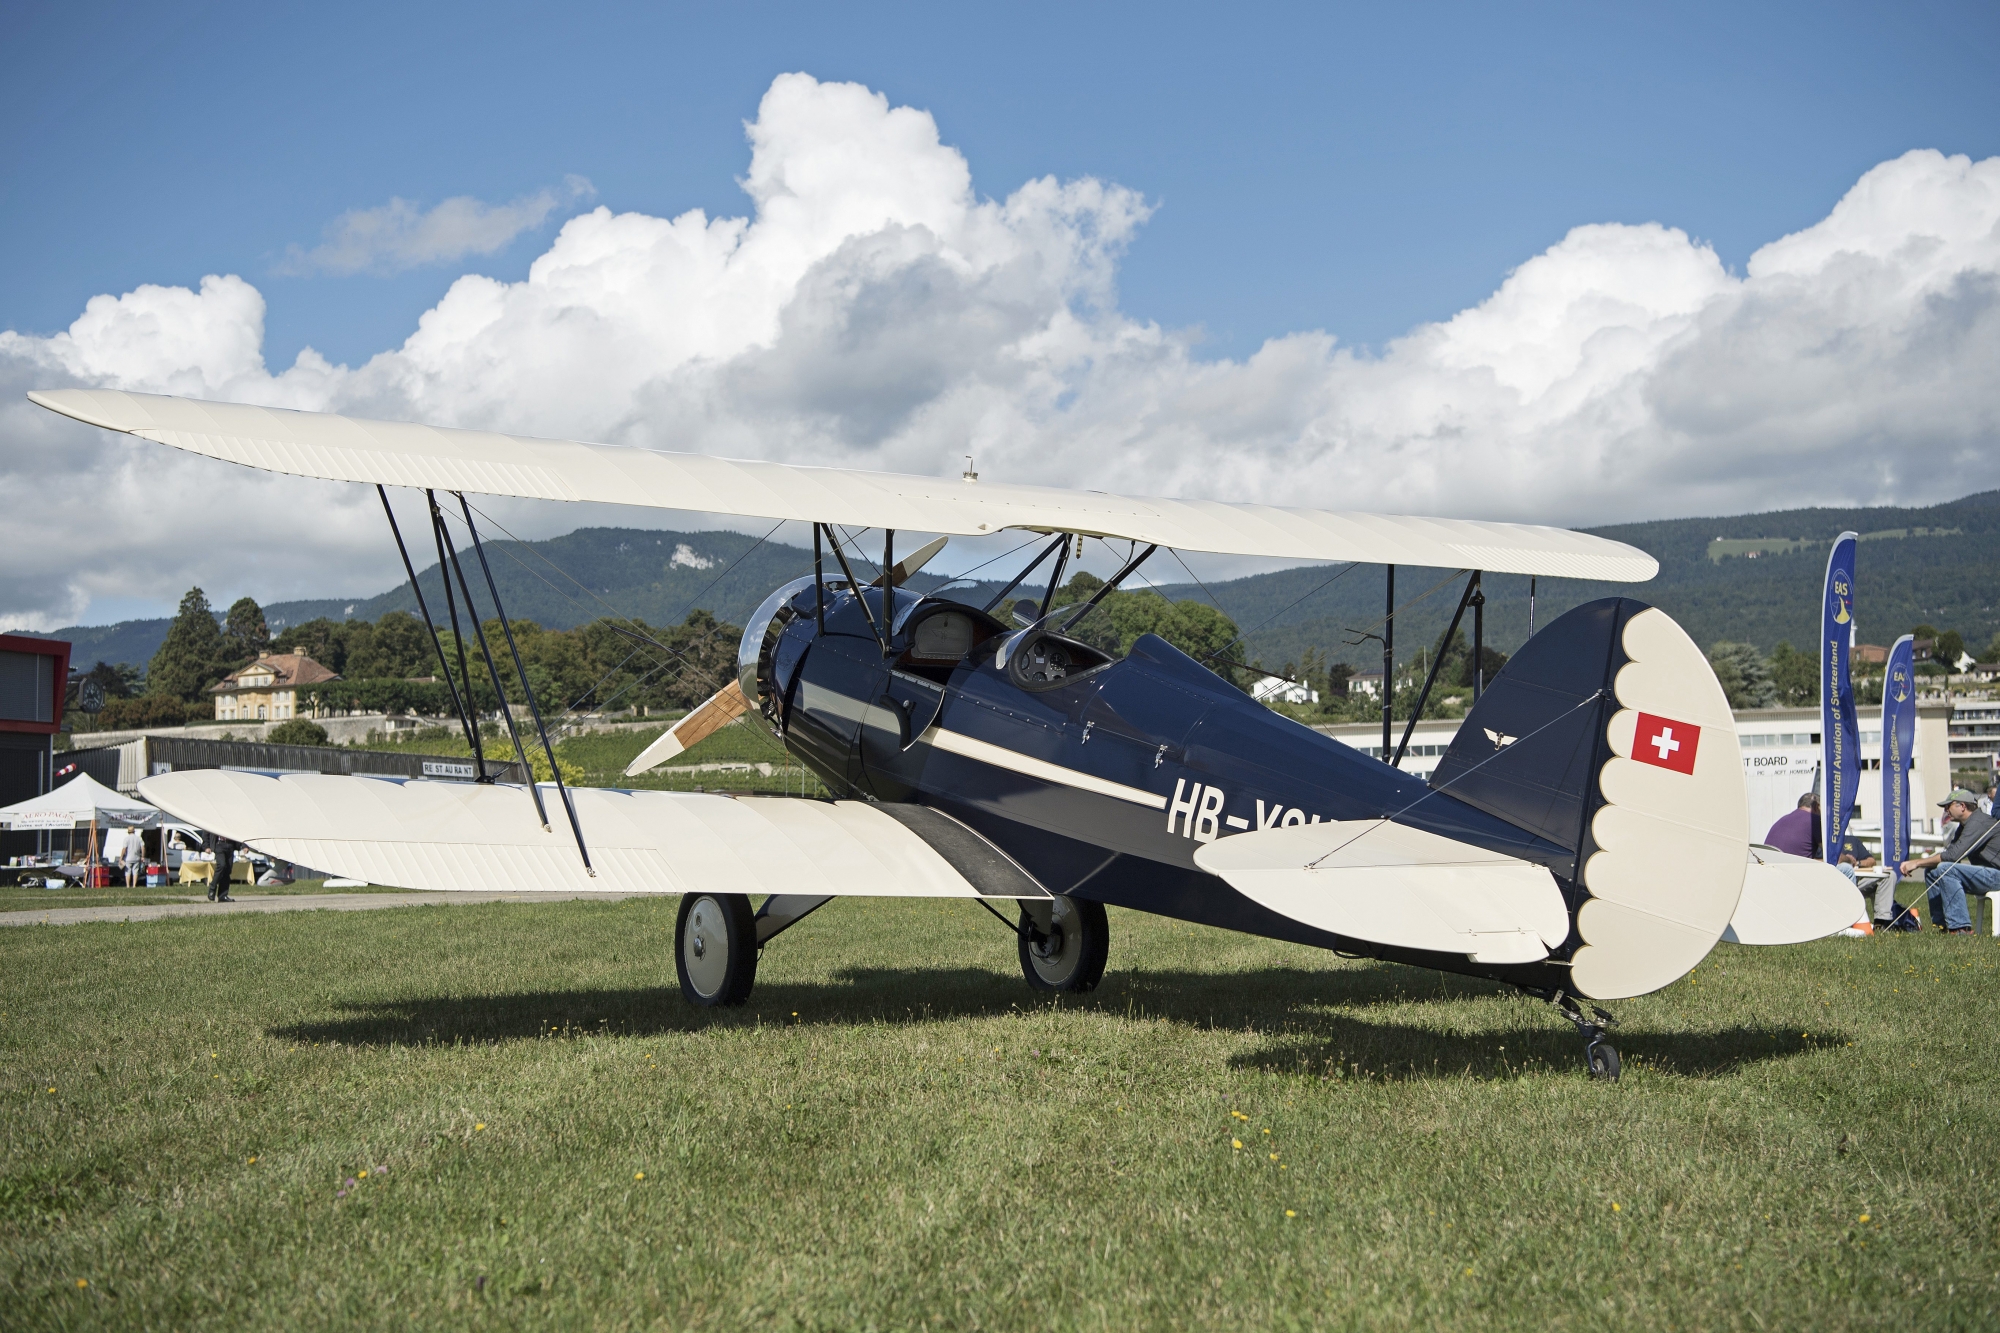 Un biplan de fabrication artisanale: l'un des joyaux présent à la rencontre internationale d'avions de construction amateur, à Colombier.